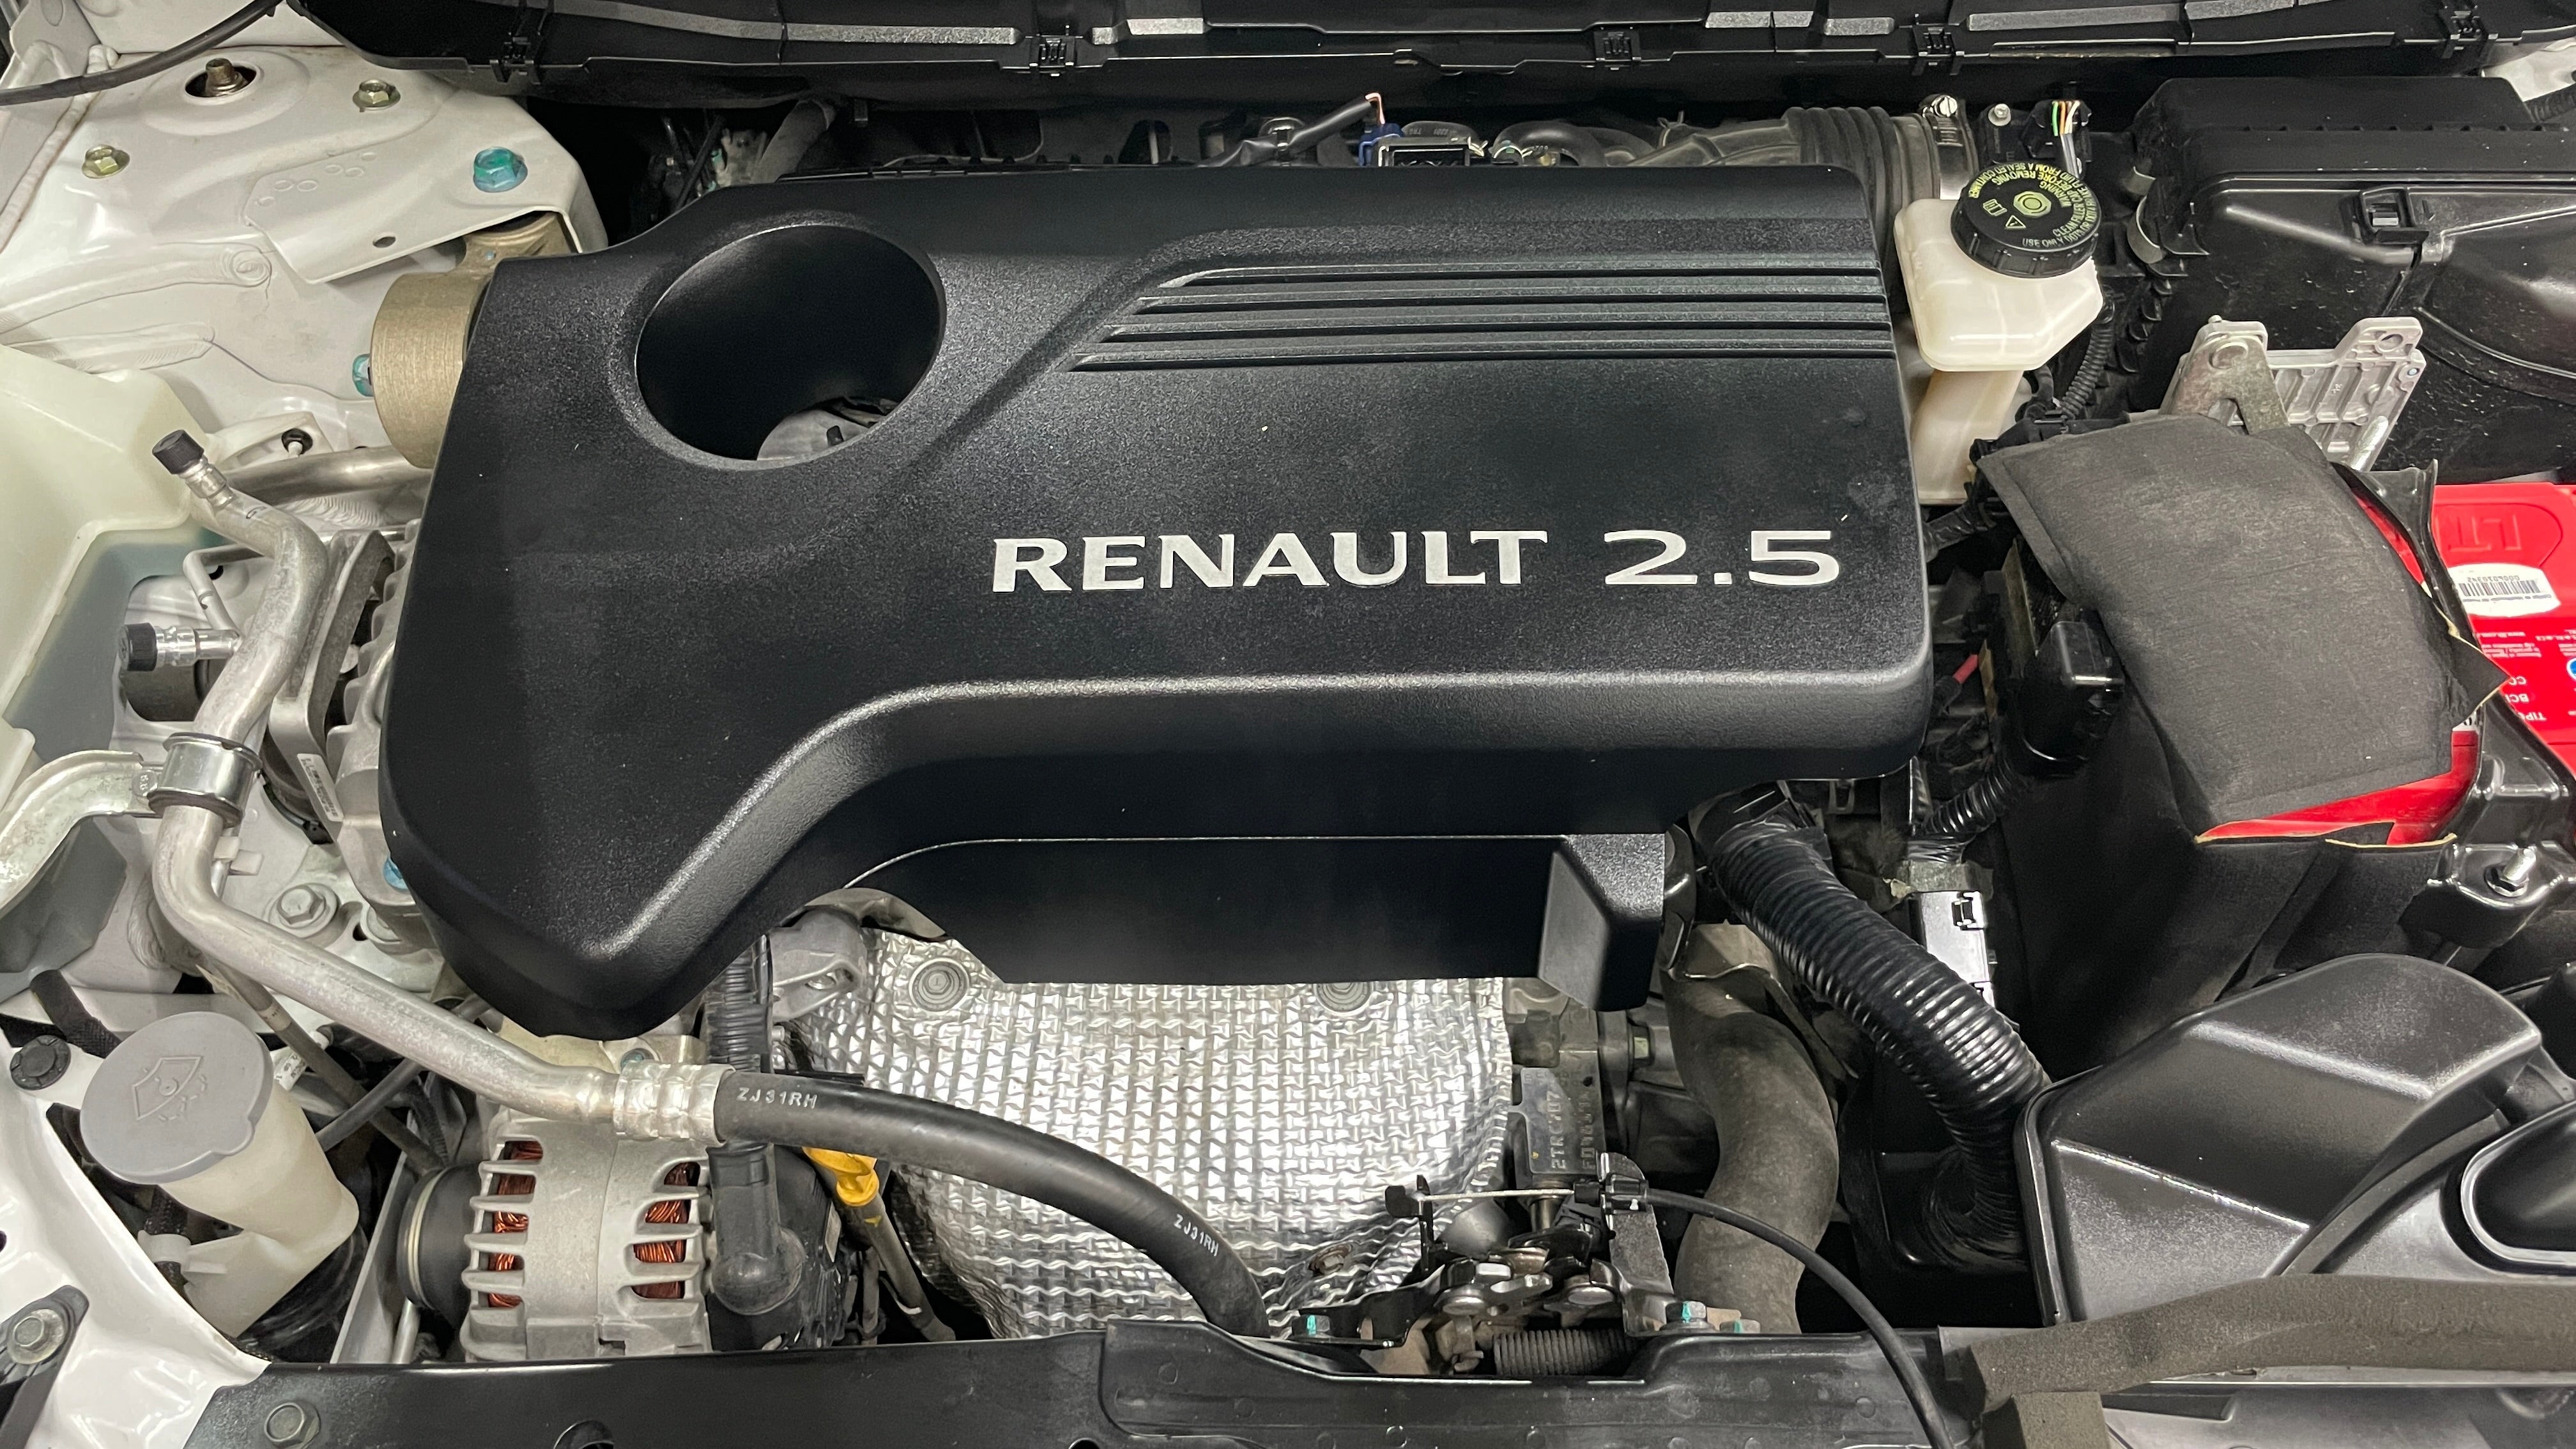 2020 Renault Koleos ICONIC L4 2.5L 171 CP 5 PUERTAS AUT PIEL BA AA QC